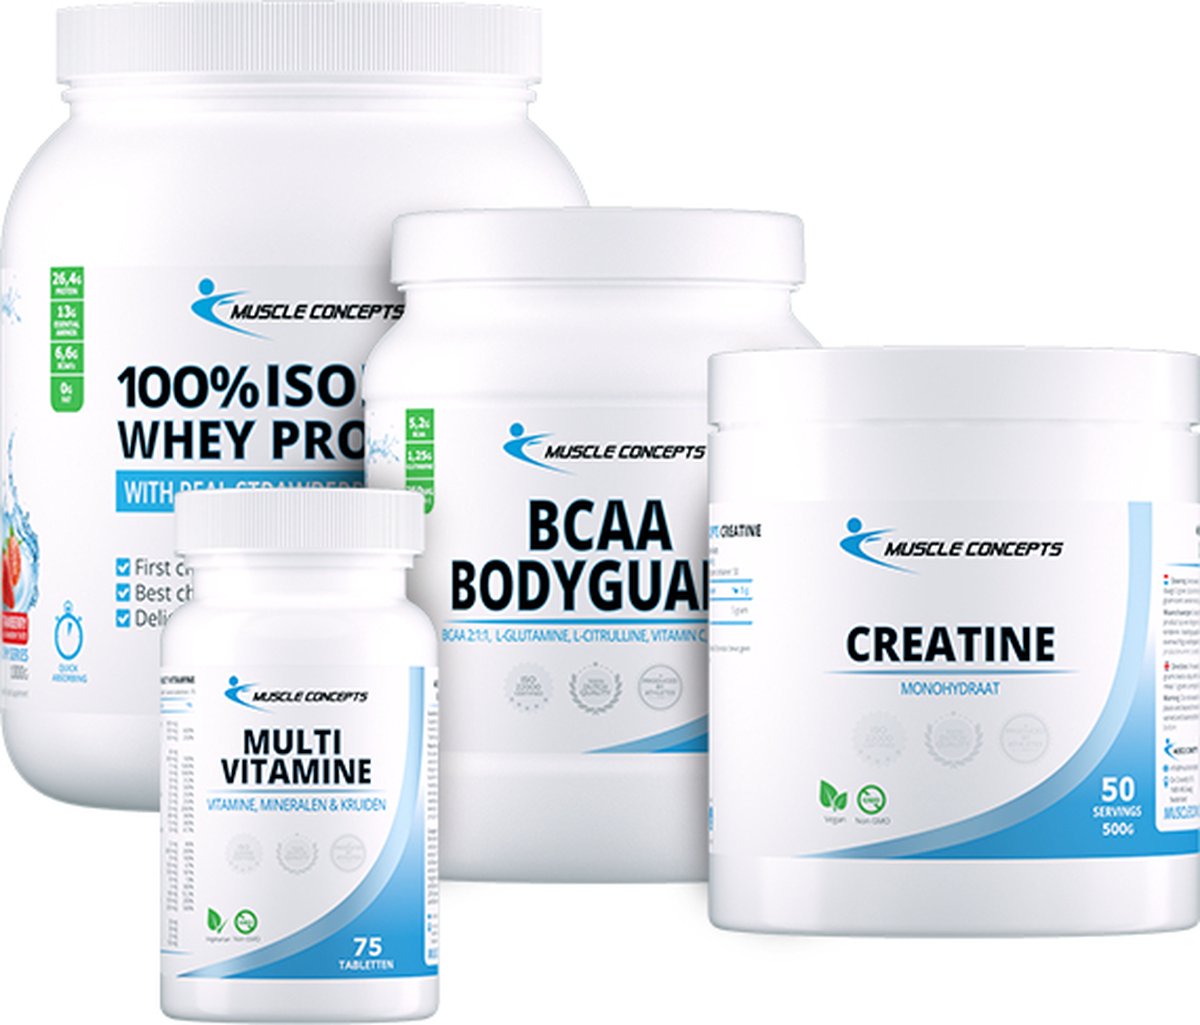 Topsporter Pakket | Muscle Concepts - Whey Isolaat (100%) Protein Aardbei, Creatine Monhoydraat, BCAA Bodyguard & Multivitamine